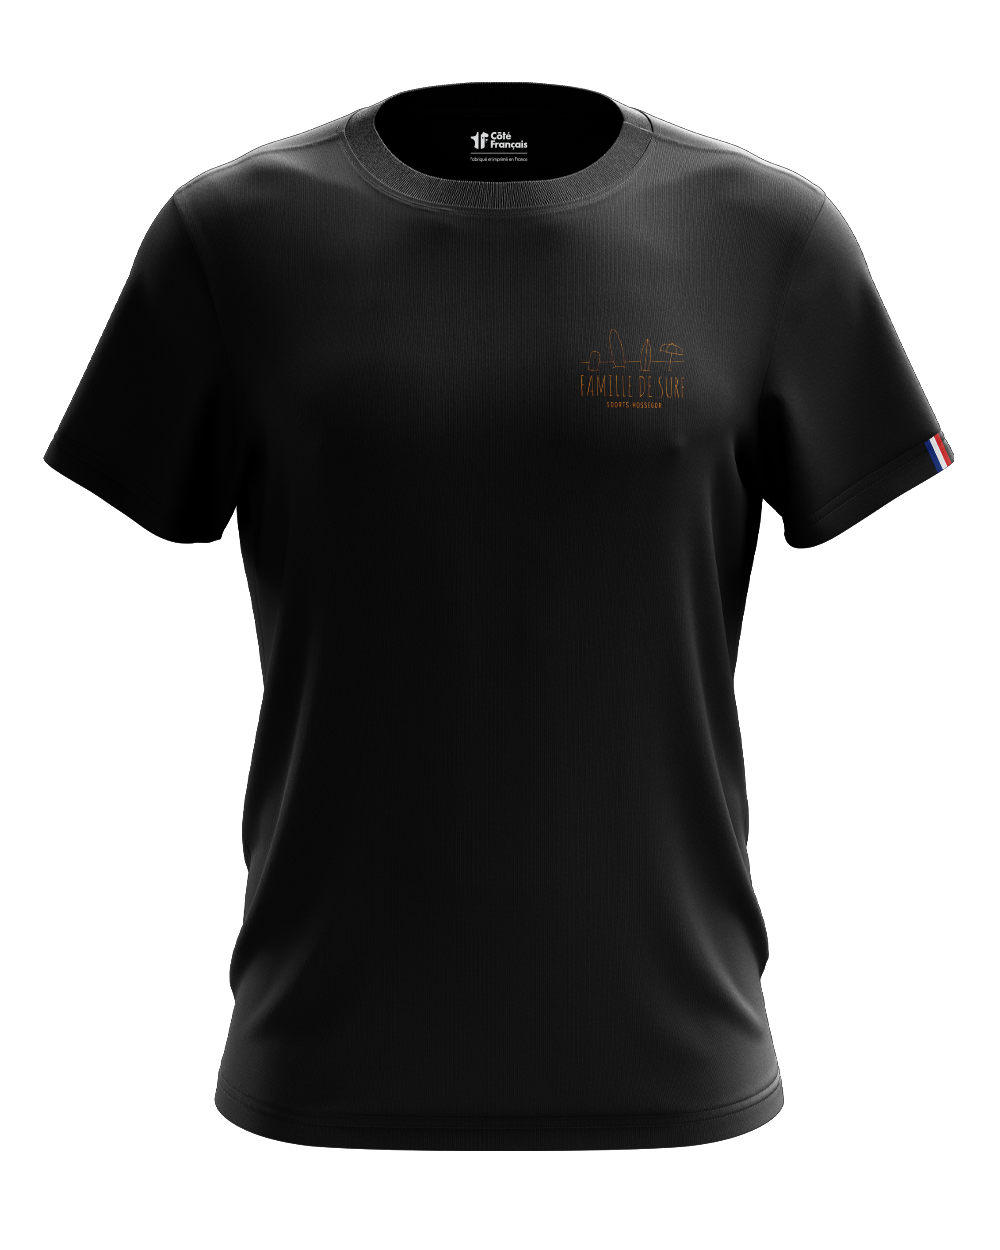 T-Shirt "Famille de surf" - noir